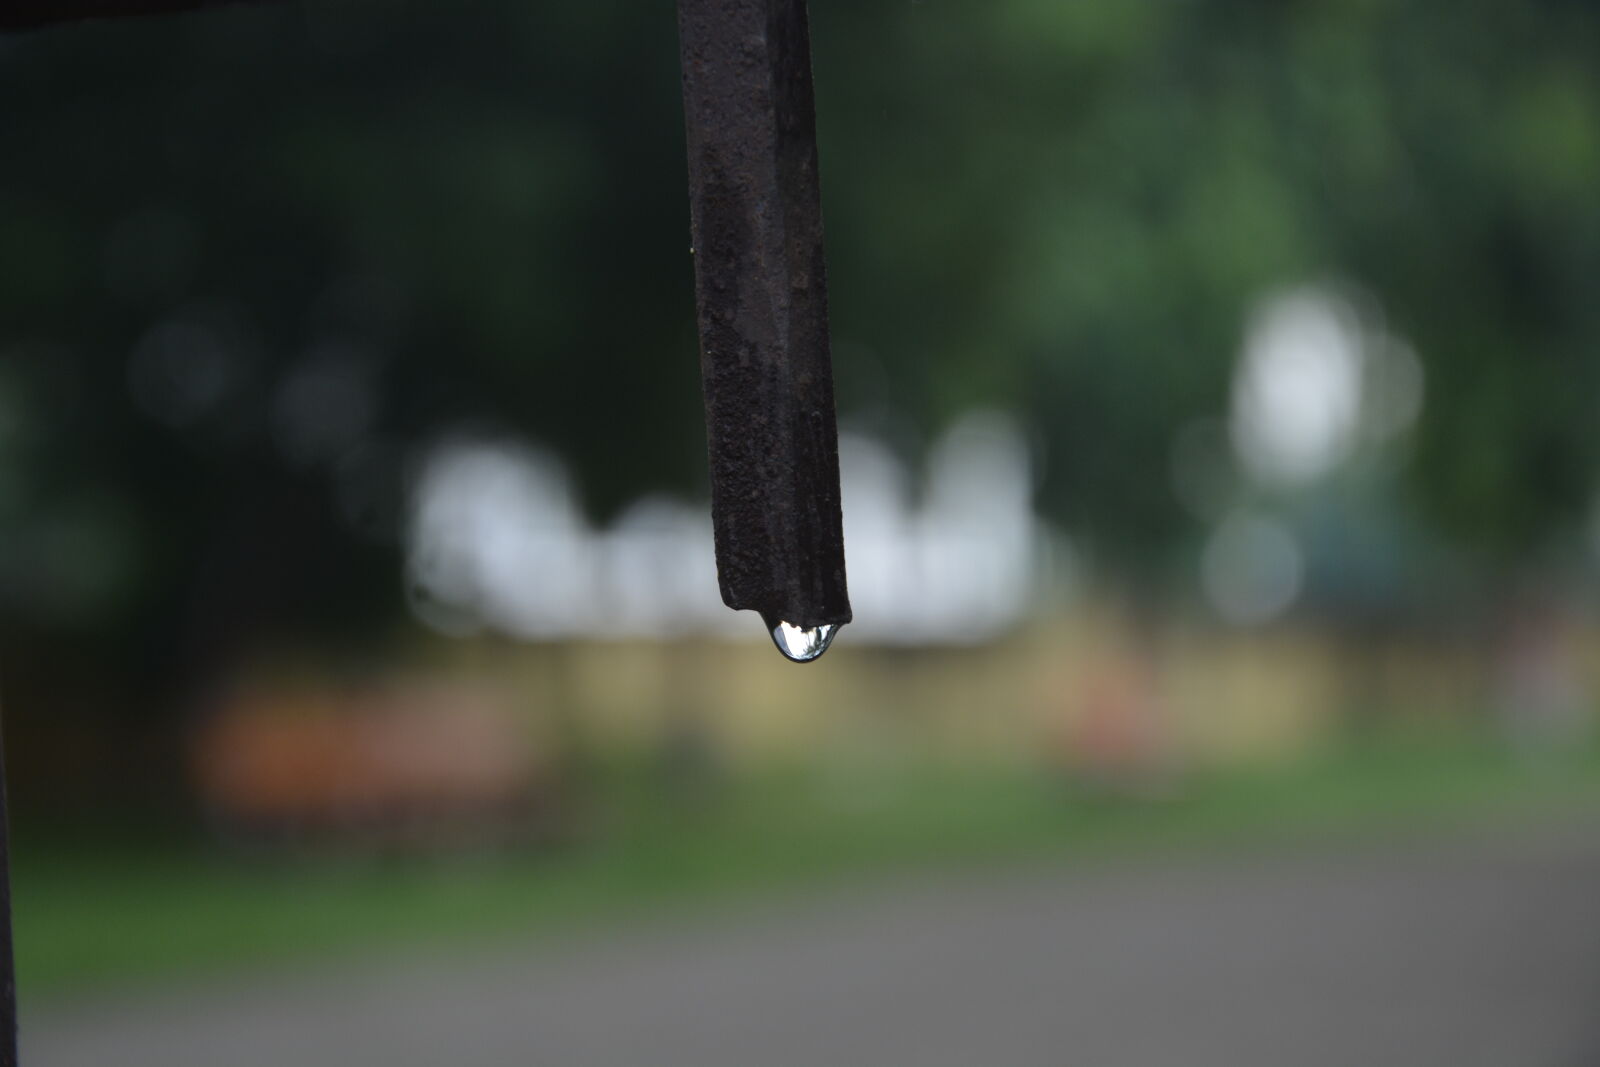 Nikon D5200 sample photo. After, the, rain, drop photography